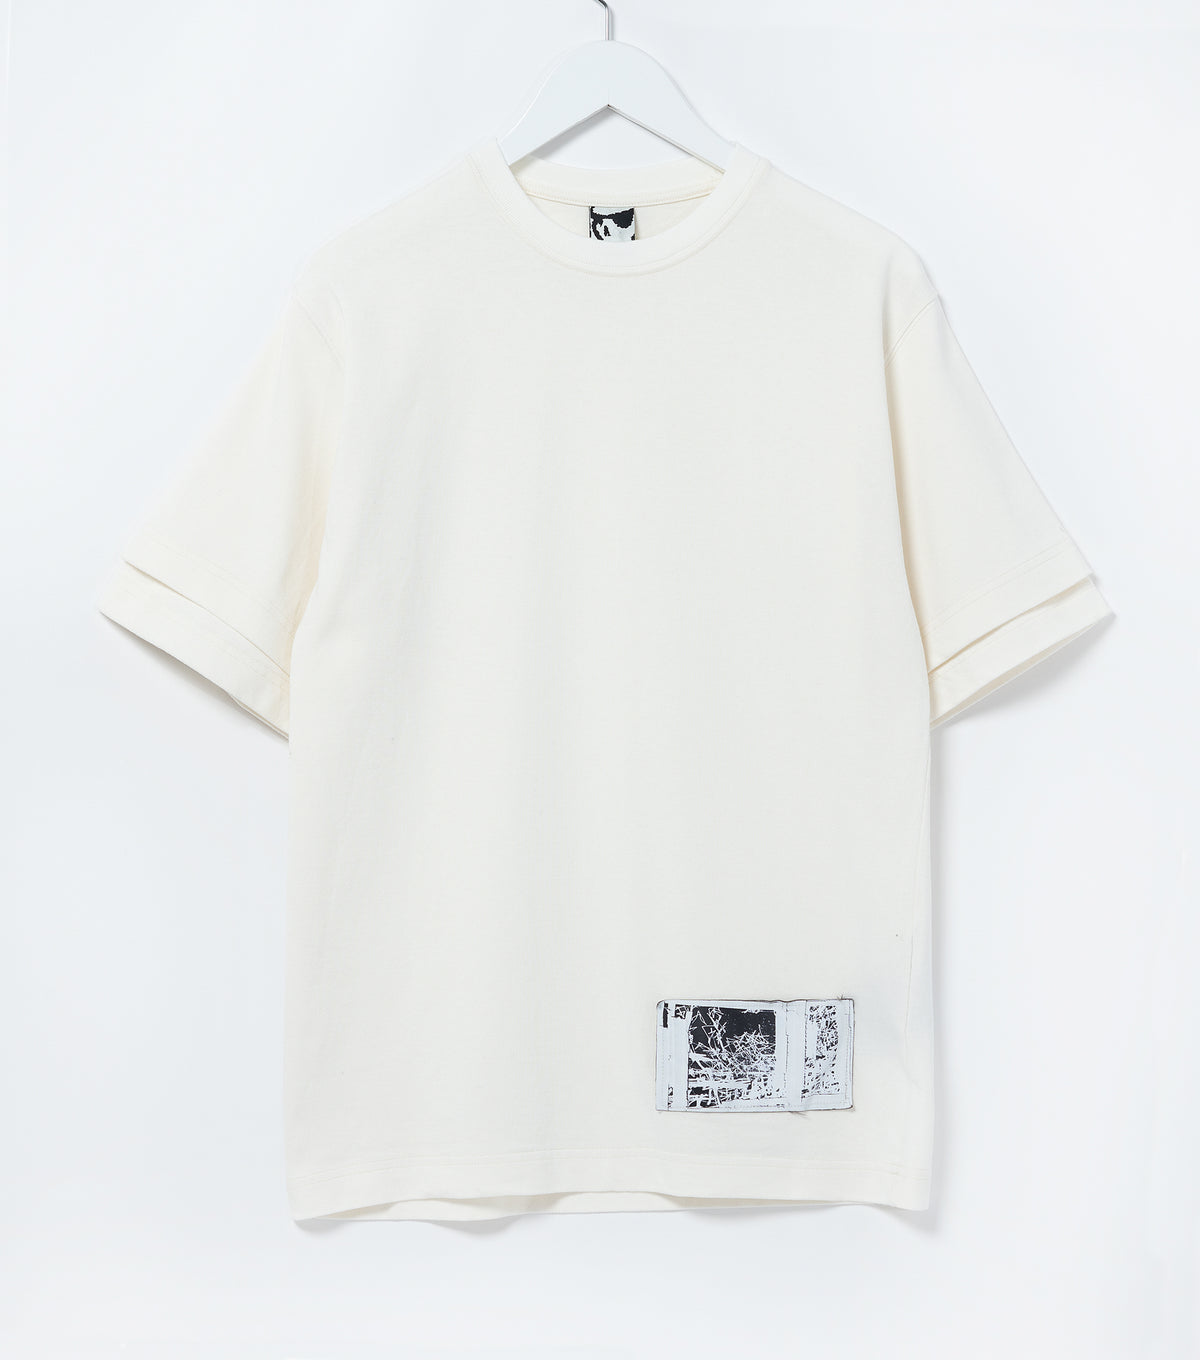 Double 8 Oz. Utility S/S T-Shirt (White)